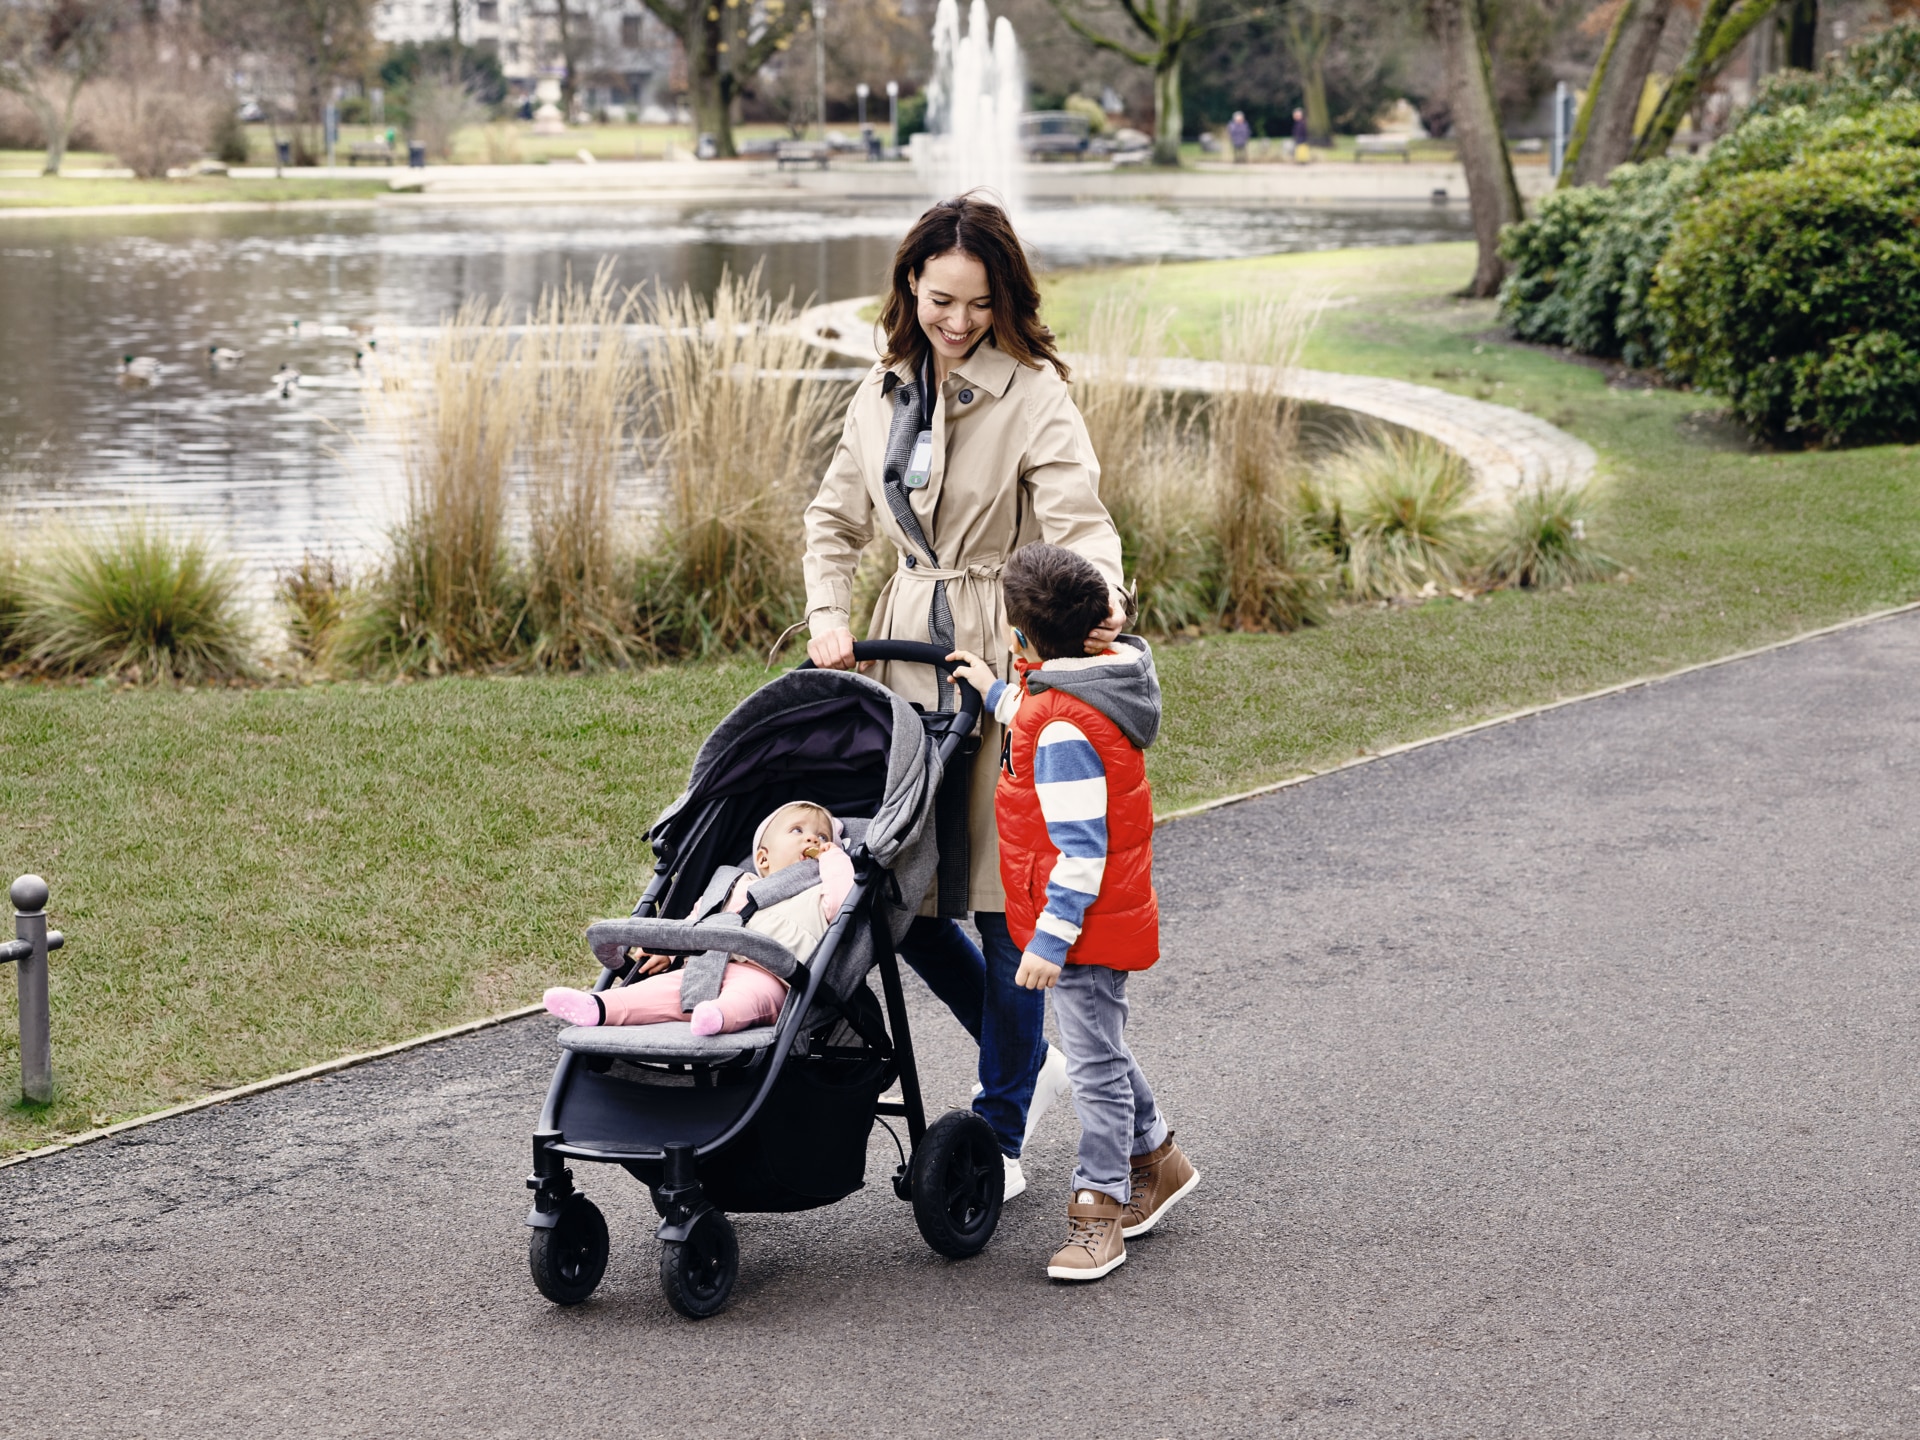 Junge Mutter mit ihren zwei Kindern in einem Park − eins ihrer Kinder trägt ein Hörsystem.